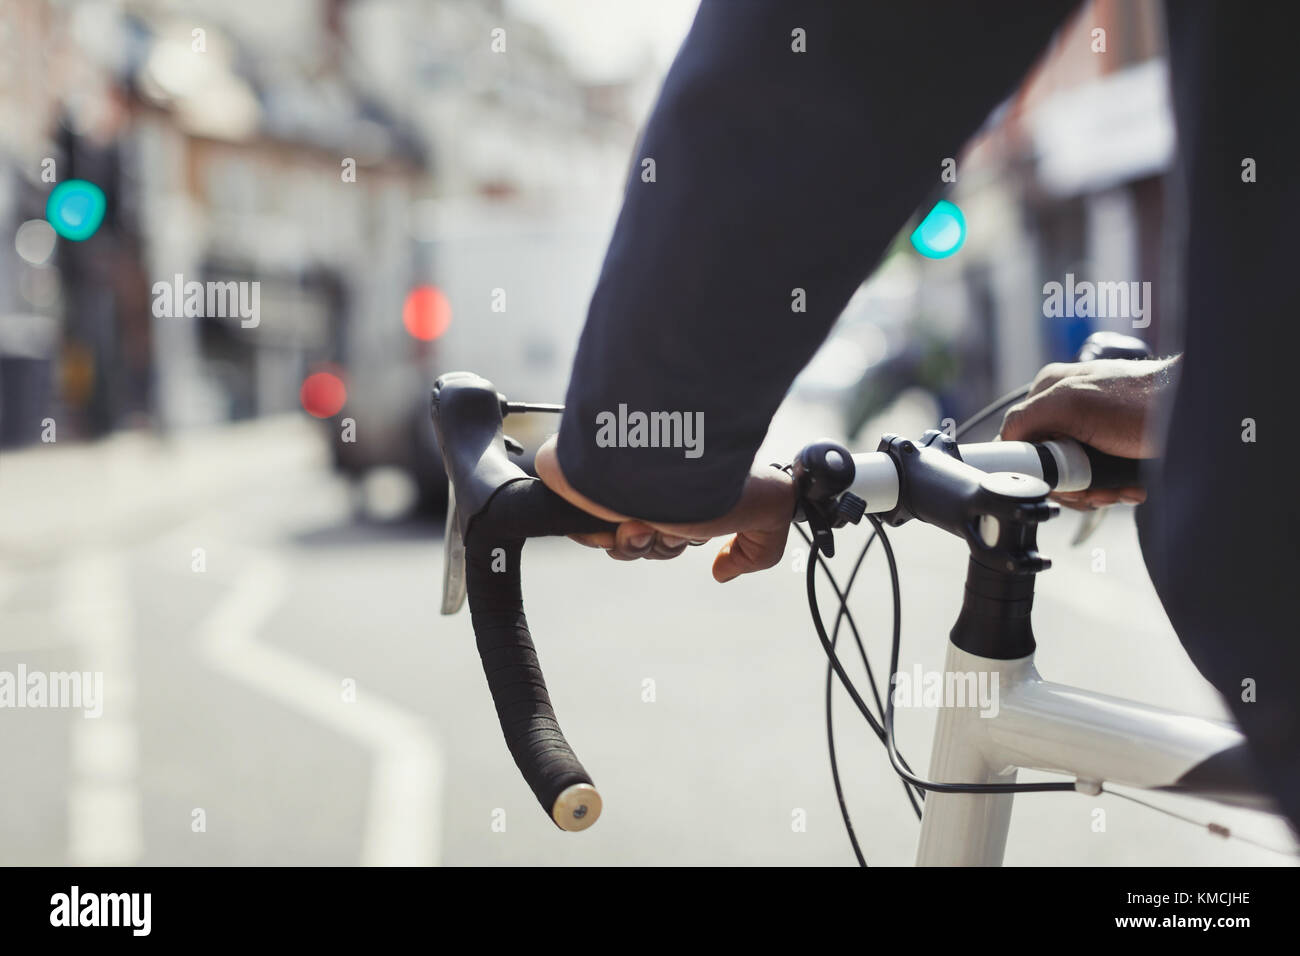 Mani sull'uomo sul manubrio della bicicletta, che si trova in una strada urbana soleggiata Foto Stock